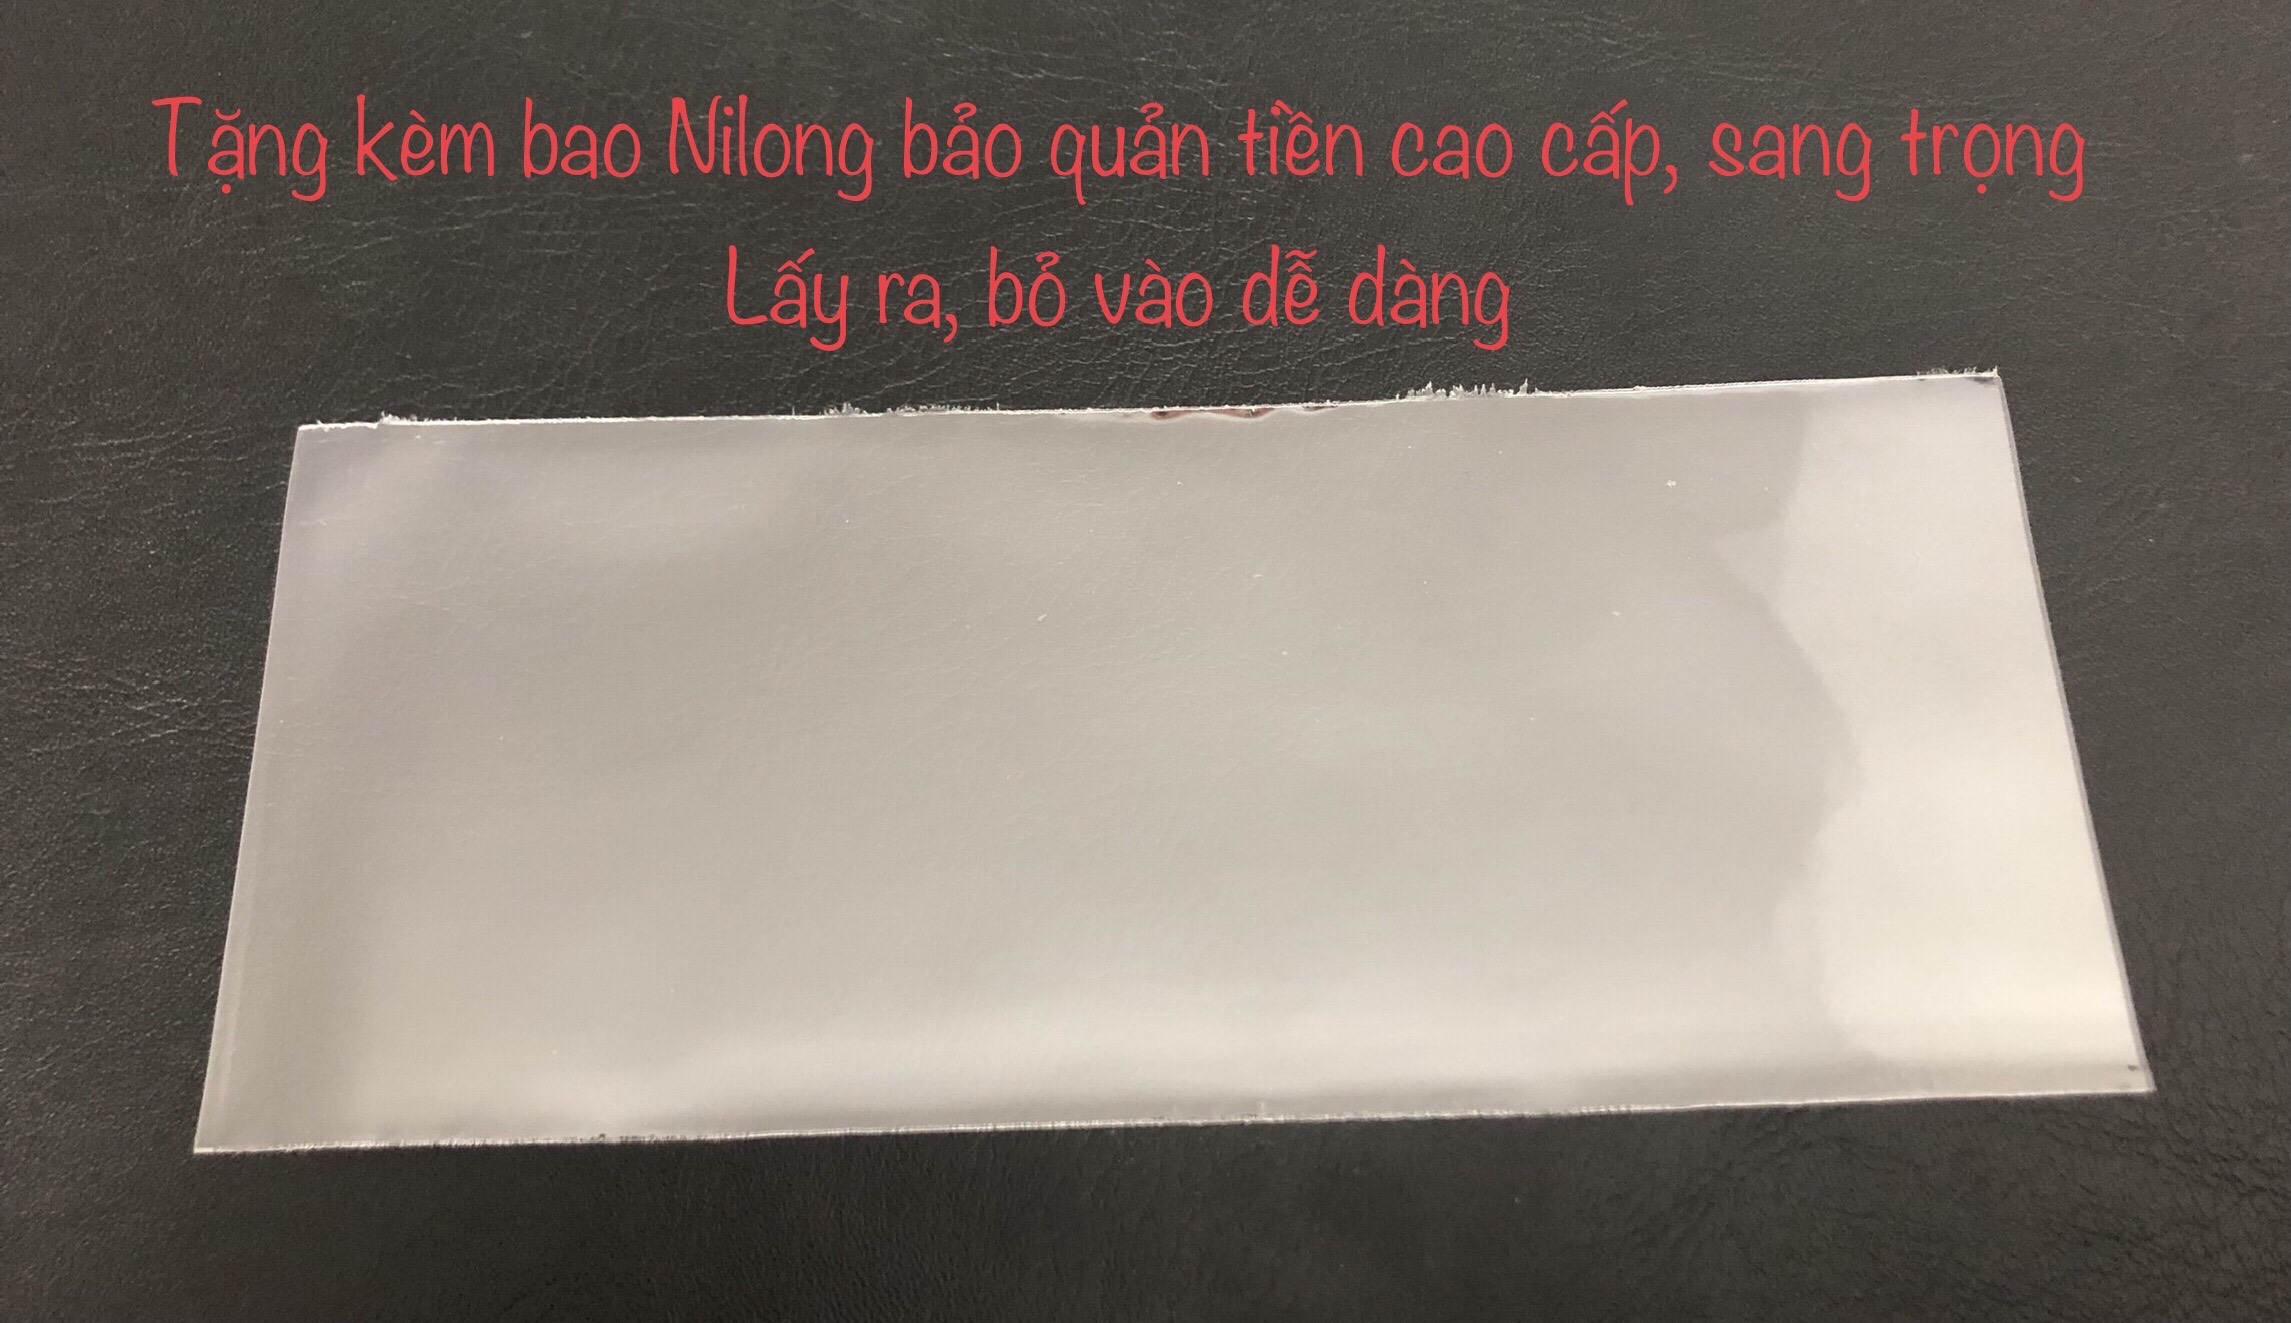 Tờ tiền 50 Vaillants PHÁP công giáo phát hành lưu hành ở Việt Nam